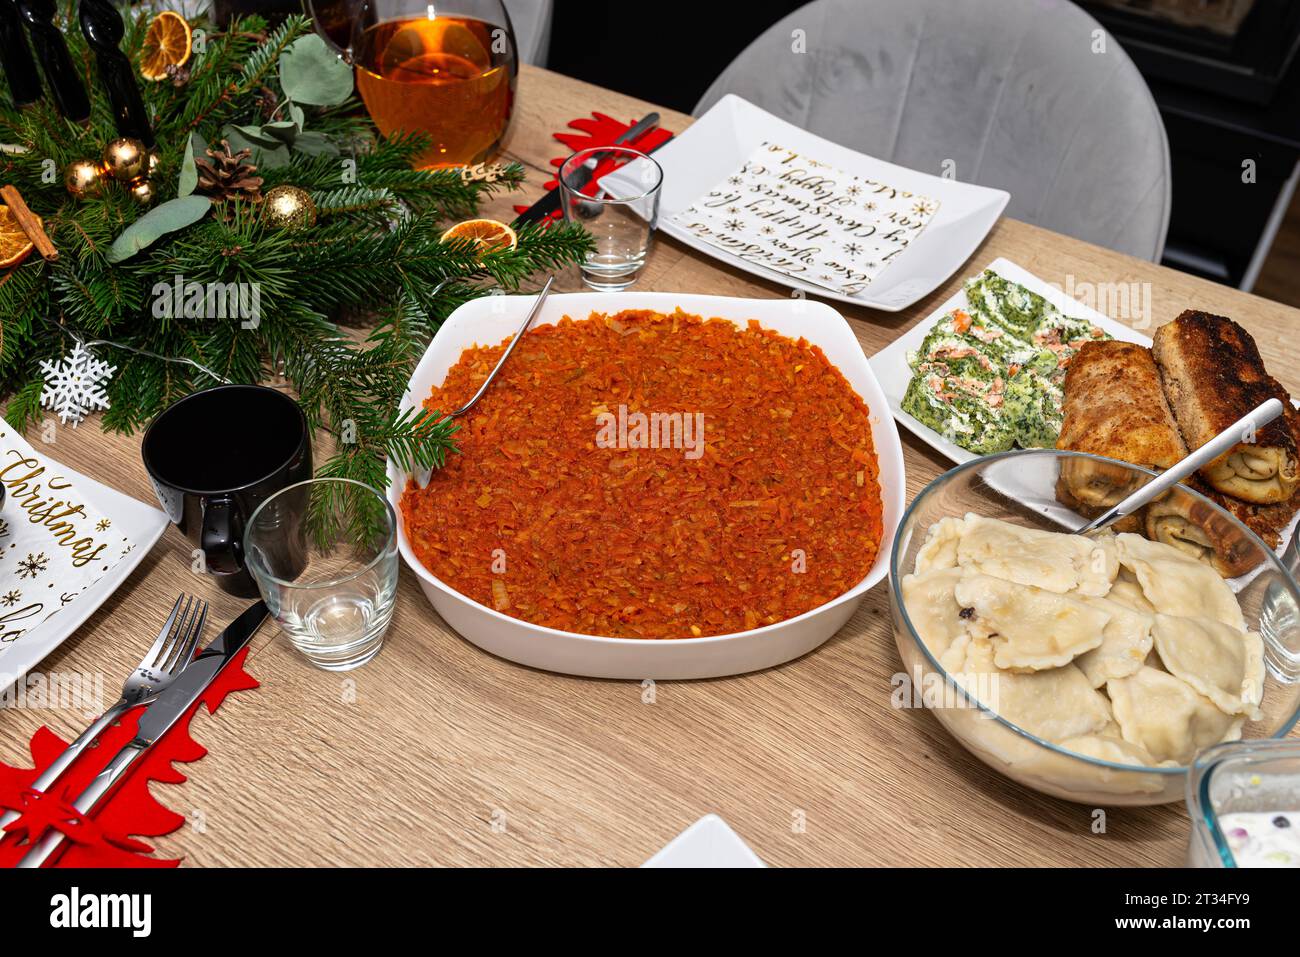 La table est mise avant le dîner de Noël en Pologne, avec des filets de poisson cuits dans une salade de carottes, des boulettes et des croquettes visibles. Banque D'Images